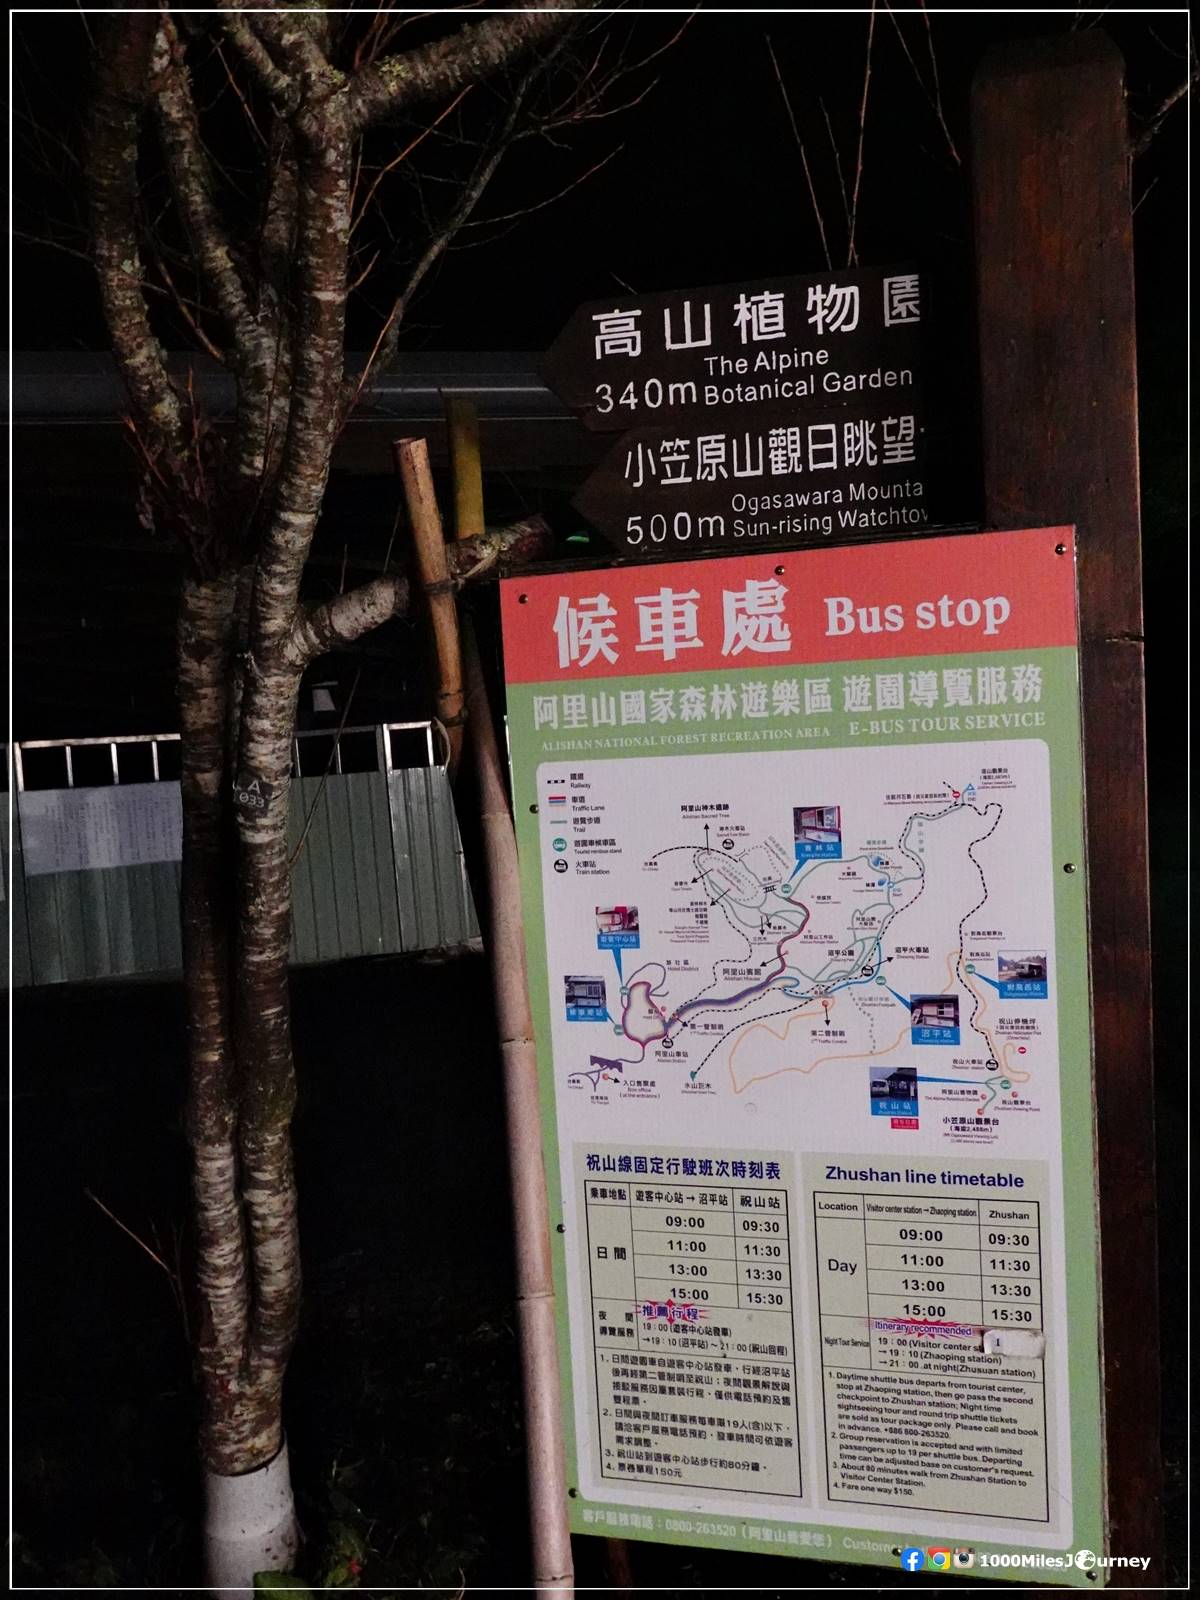 ป้ายรถบัส Zhushan Station